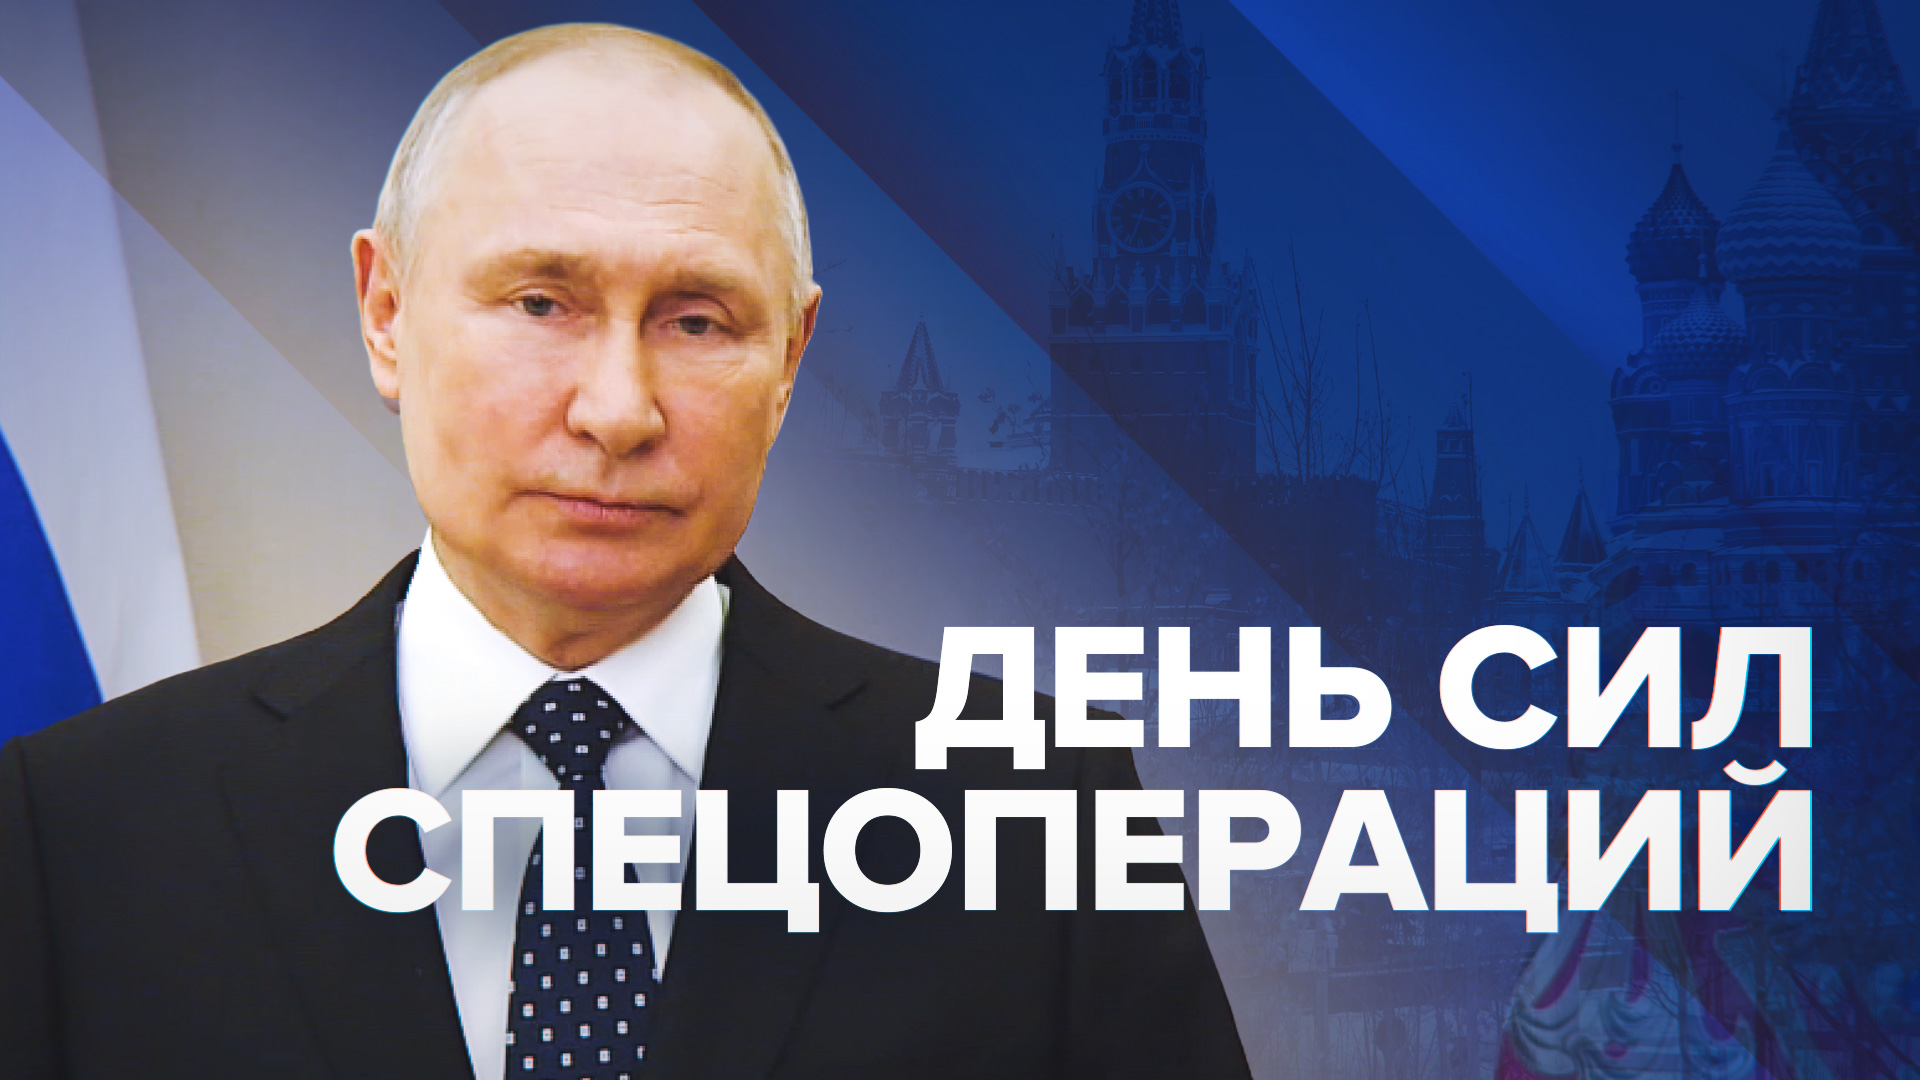 Путин поздравил военнослужащих с Днём Сил спецопераций — видео